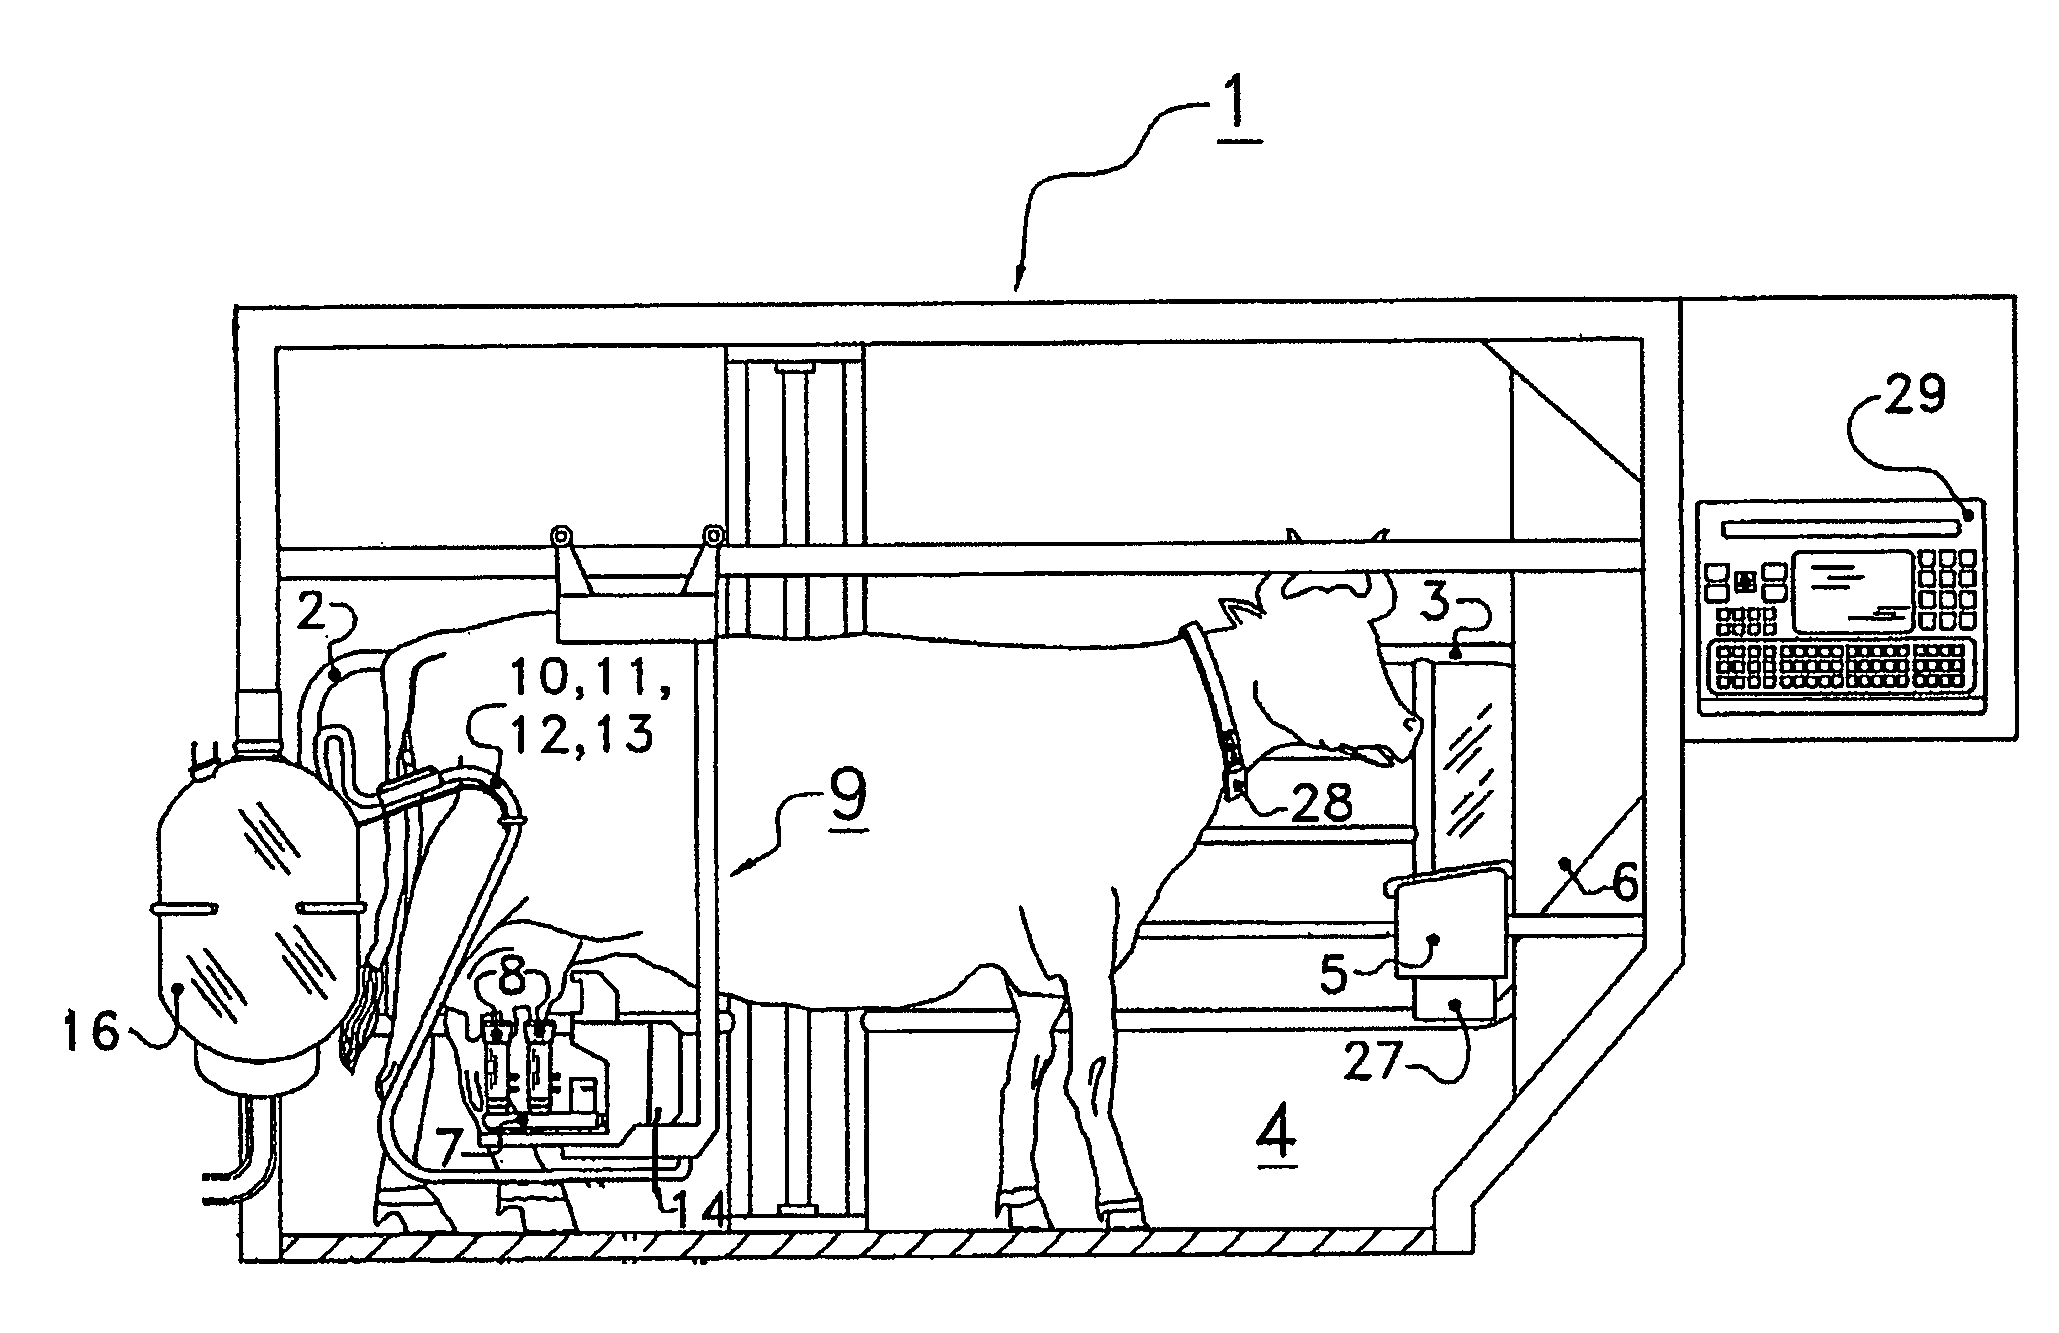 Milking box expulsion system